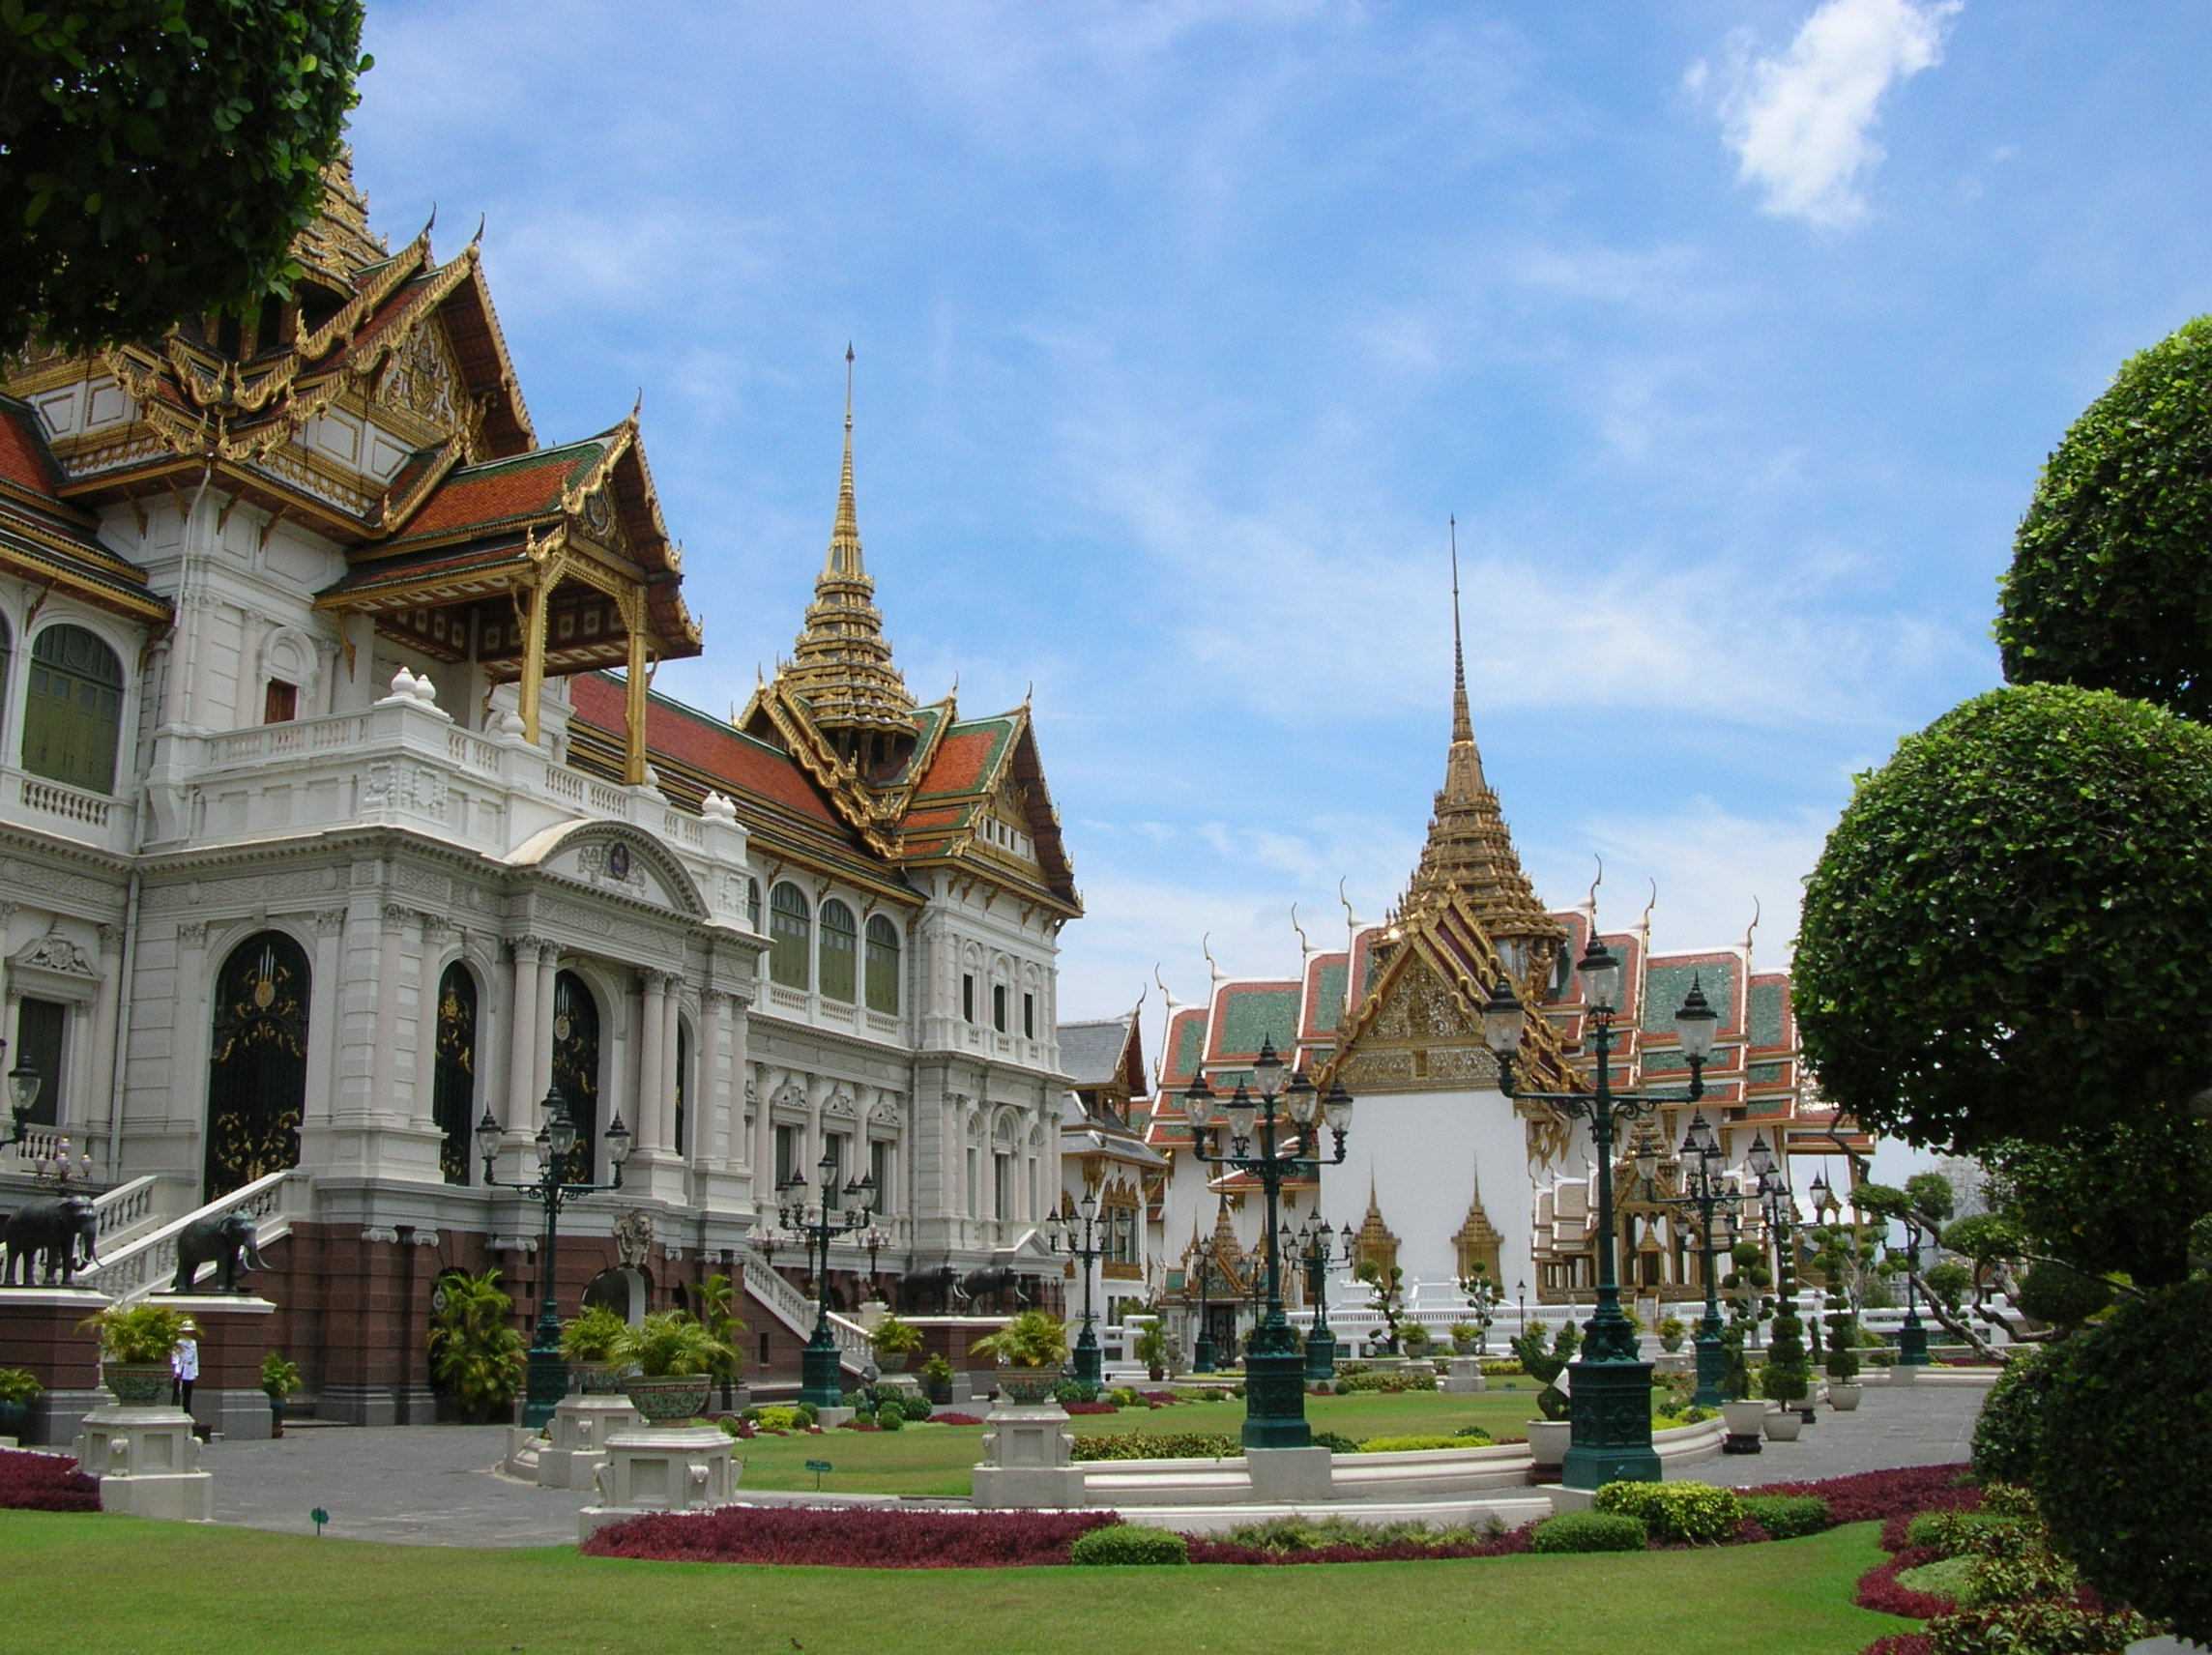 Площадь бангкока. Королевский дворец в Бангкоке. Большой Королевский дворец Бангкок Таиланд. Императорский дворец Тайланд. Гранд Палас Бангкок.